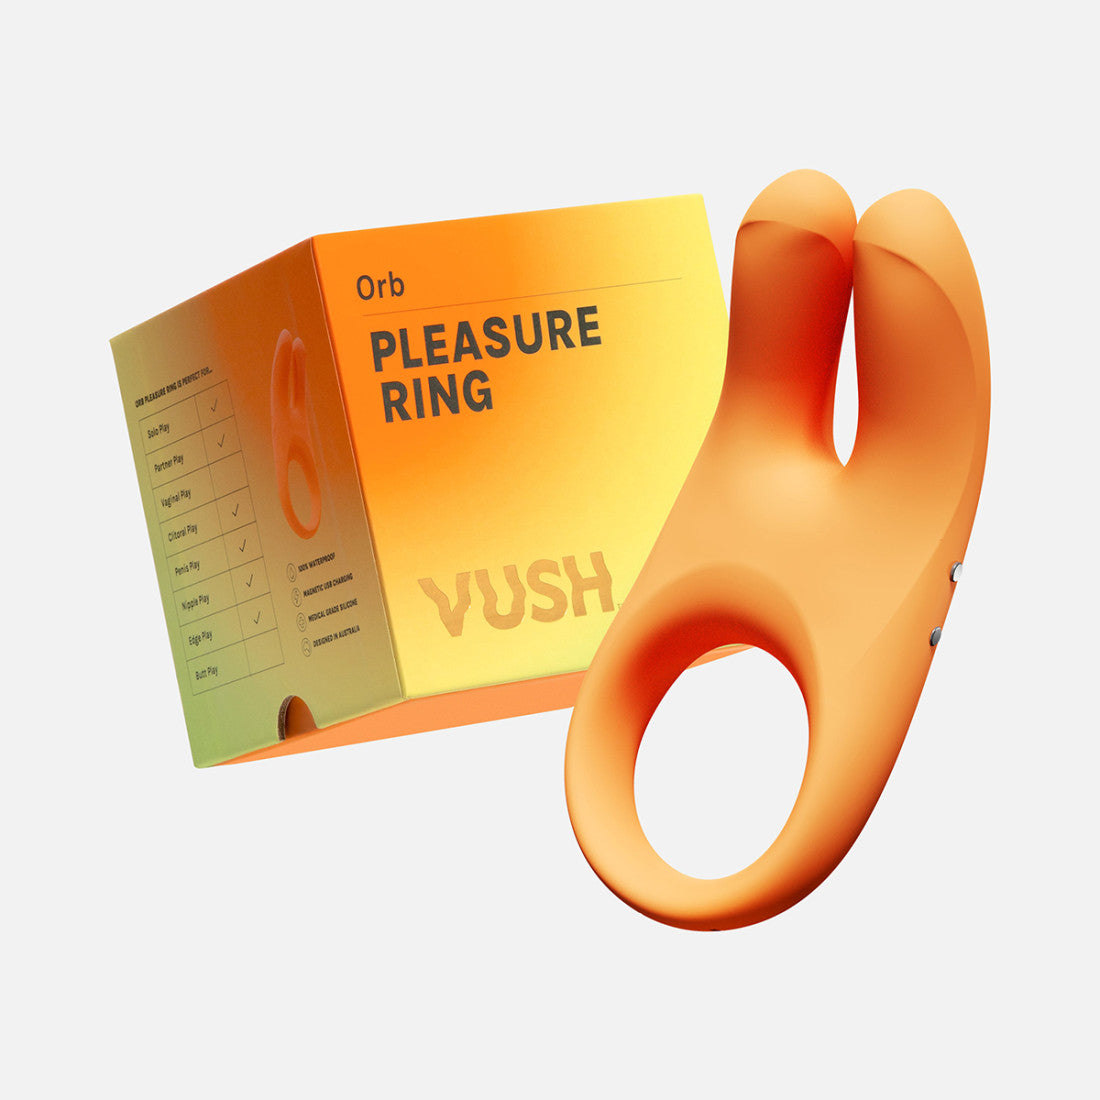 Vush - Penis Ring and Clit Stimulator - You Vibe, We Vibe